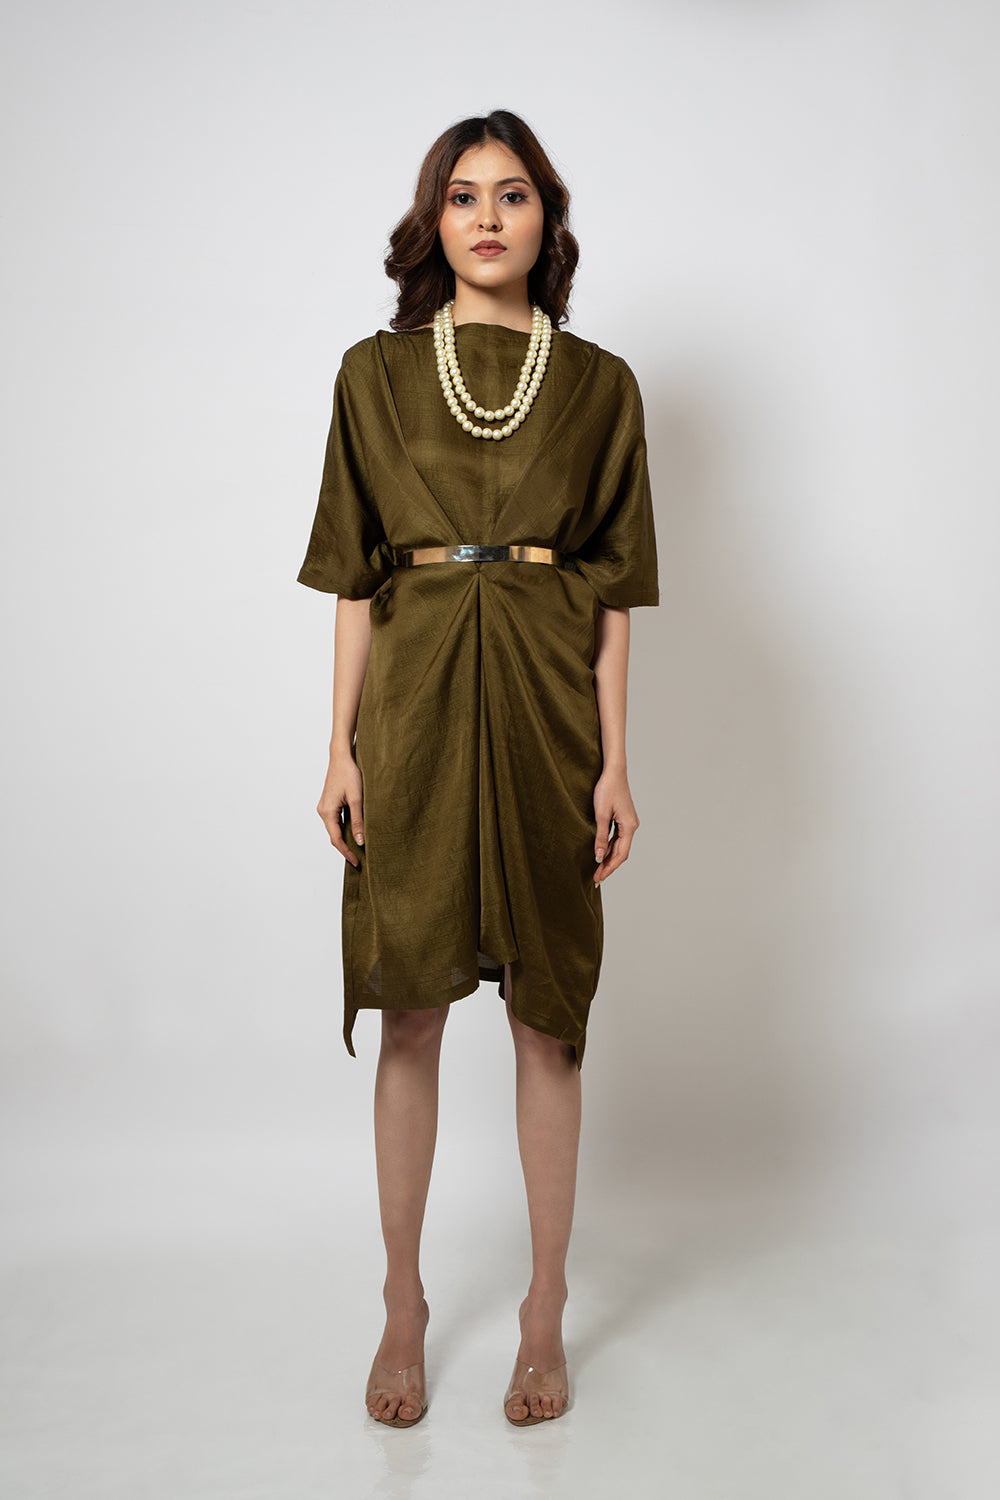 9. Olive green zero waste silk blend dress